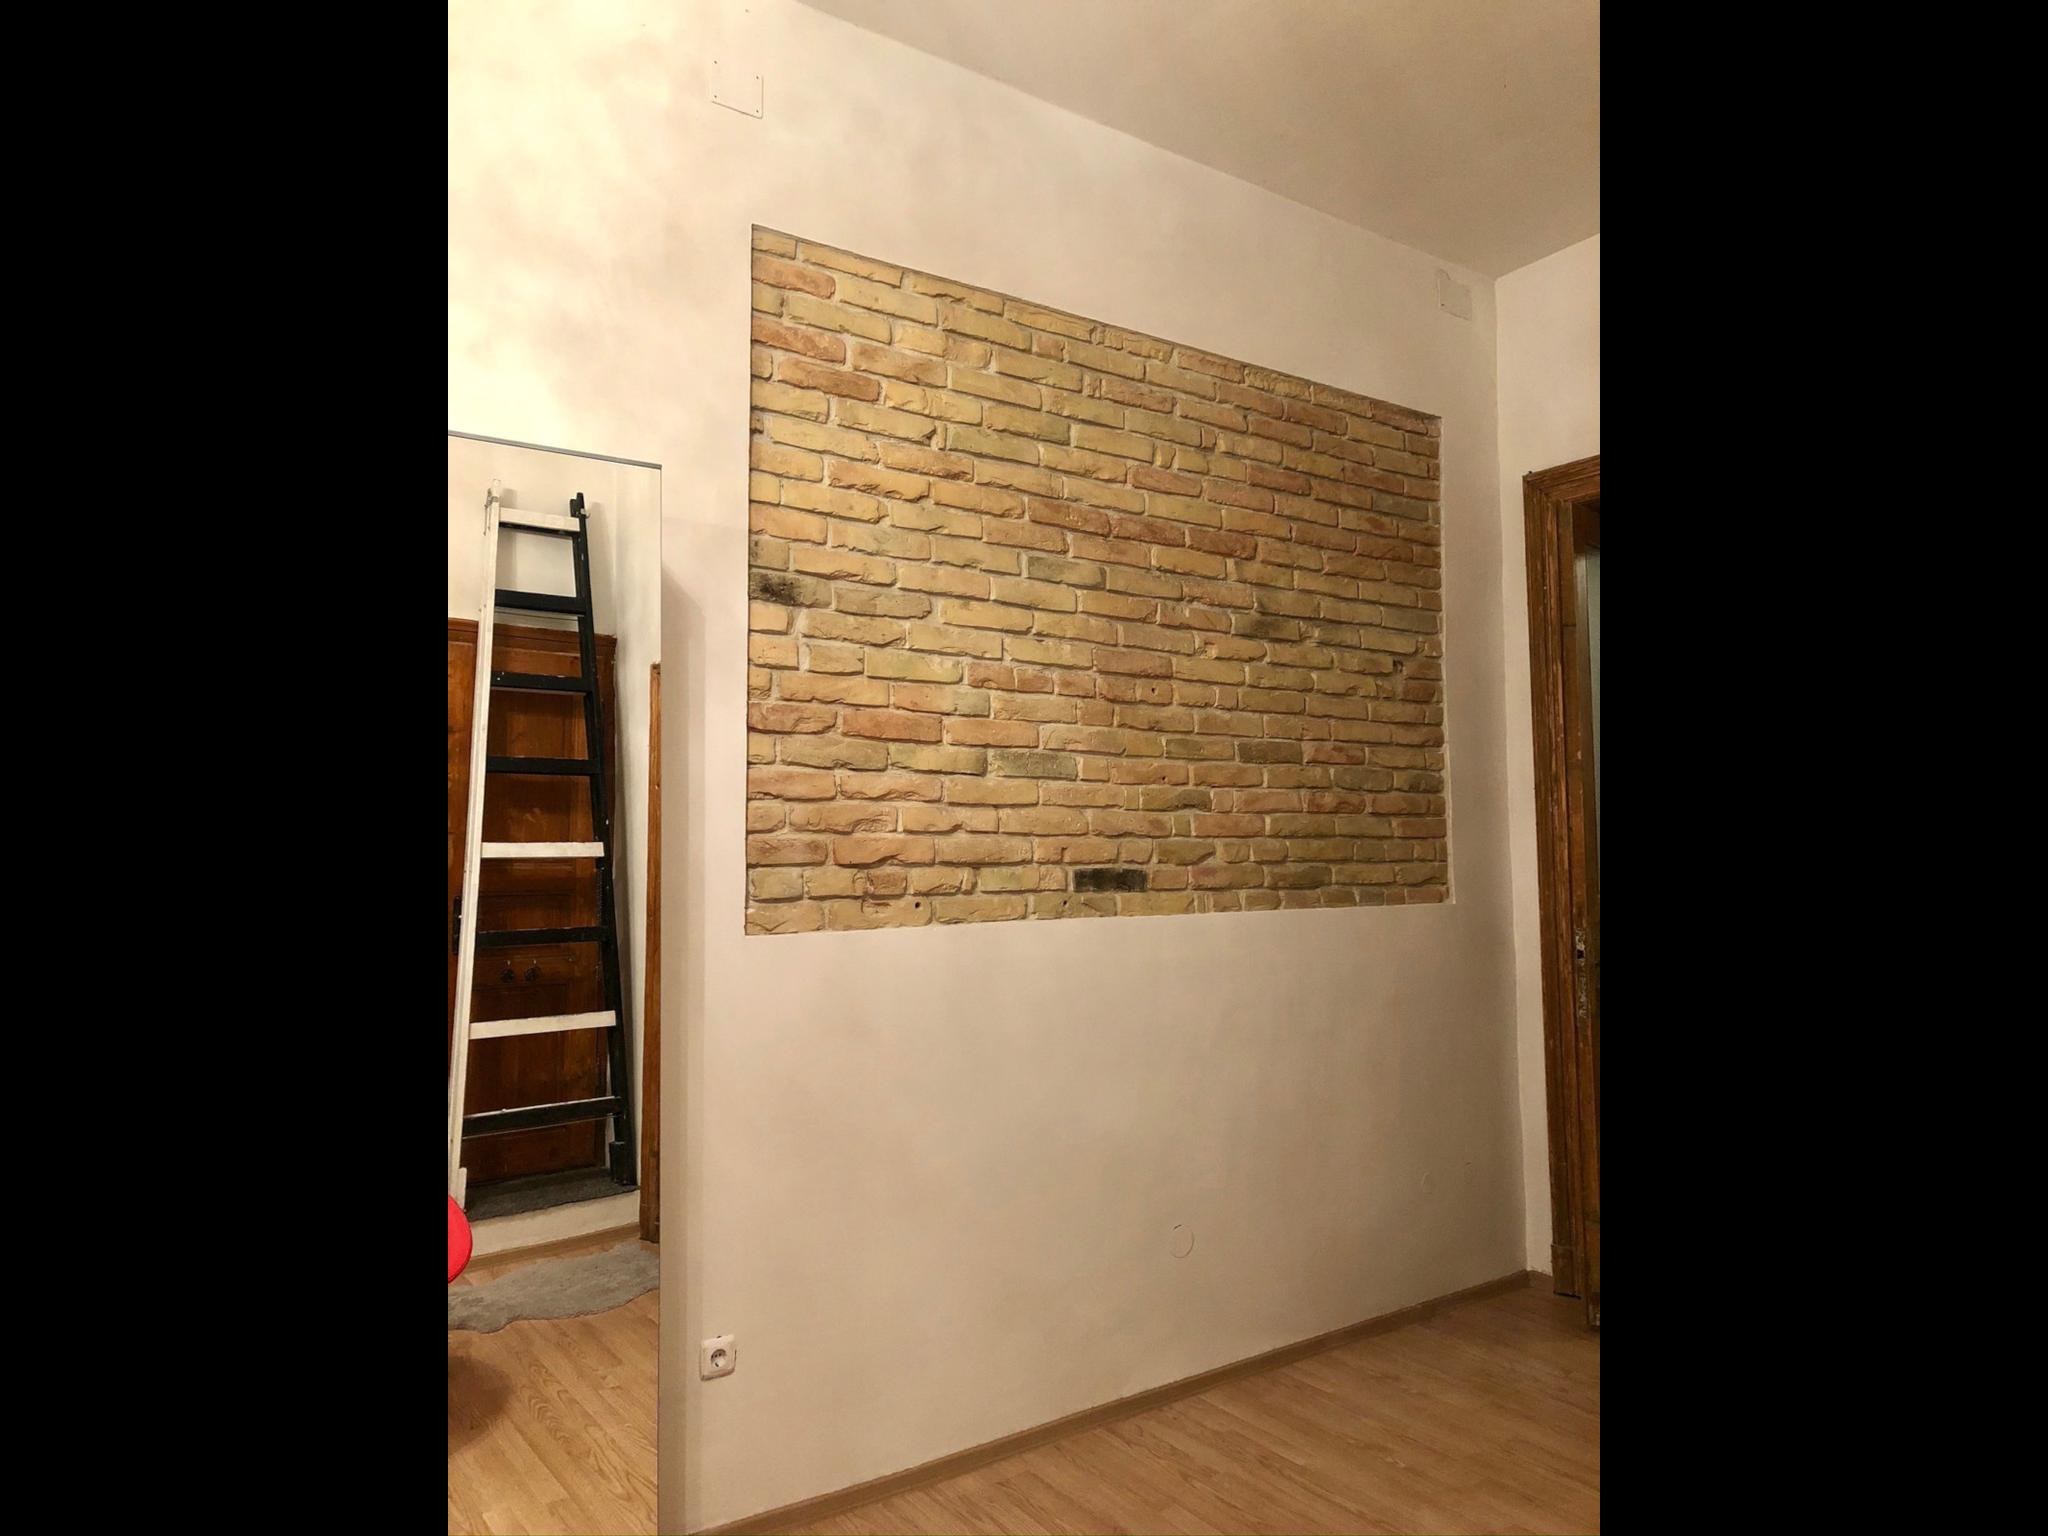 Rakoczi - Loft apartment in Budapest